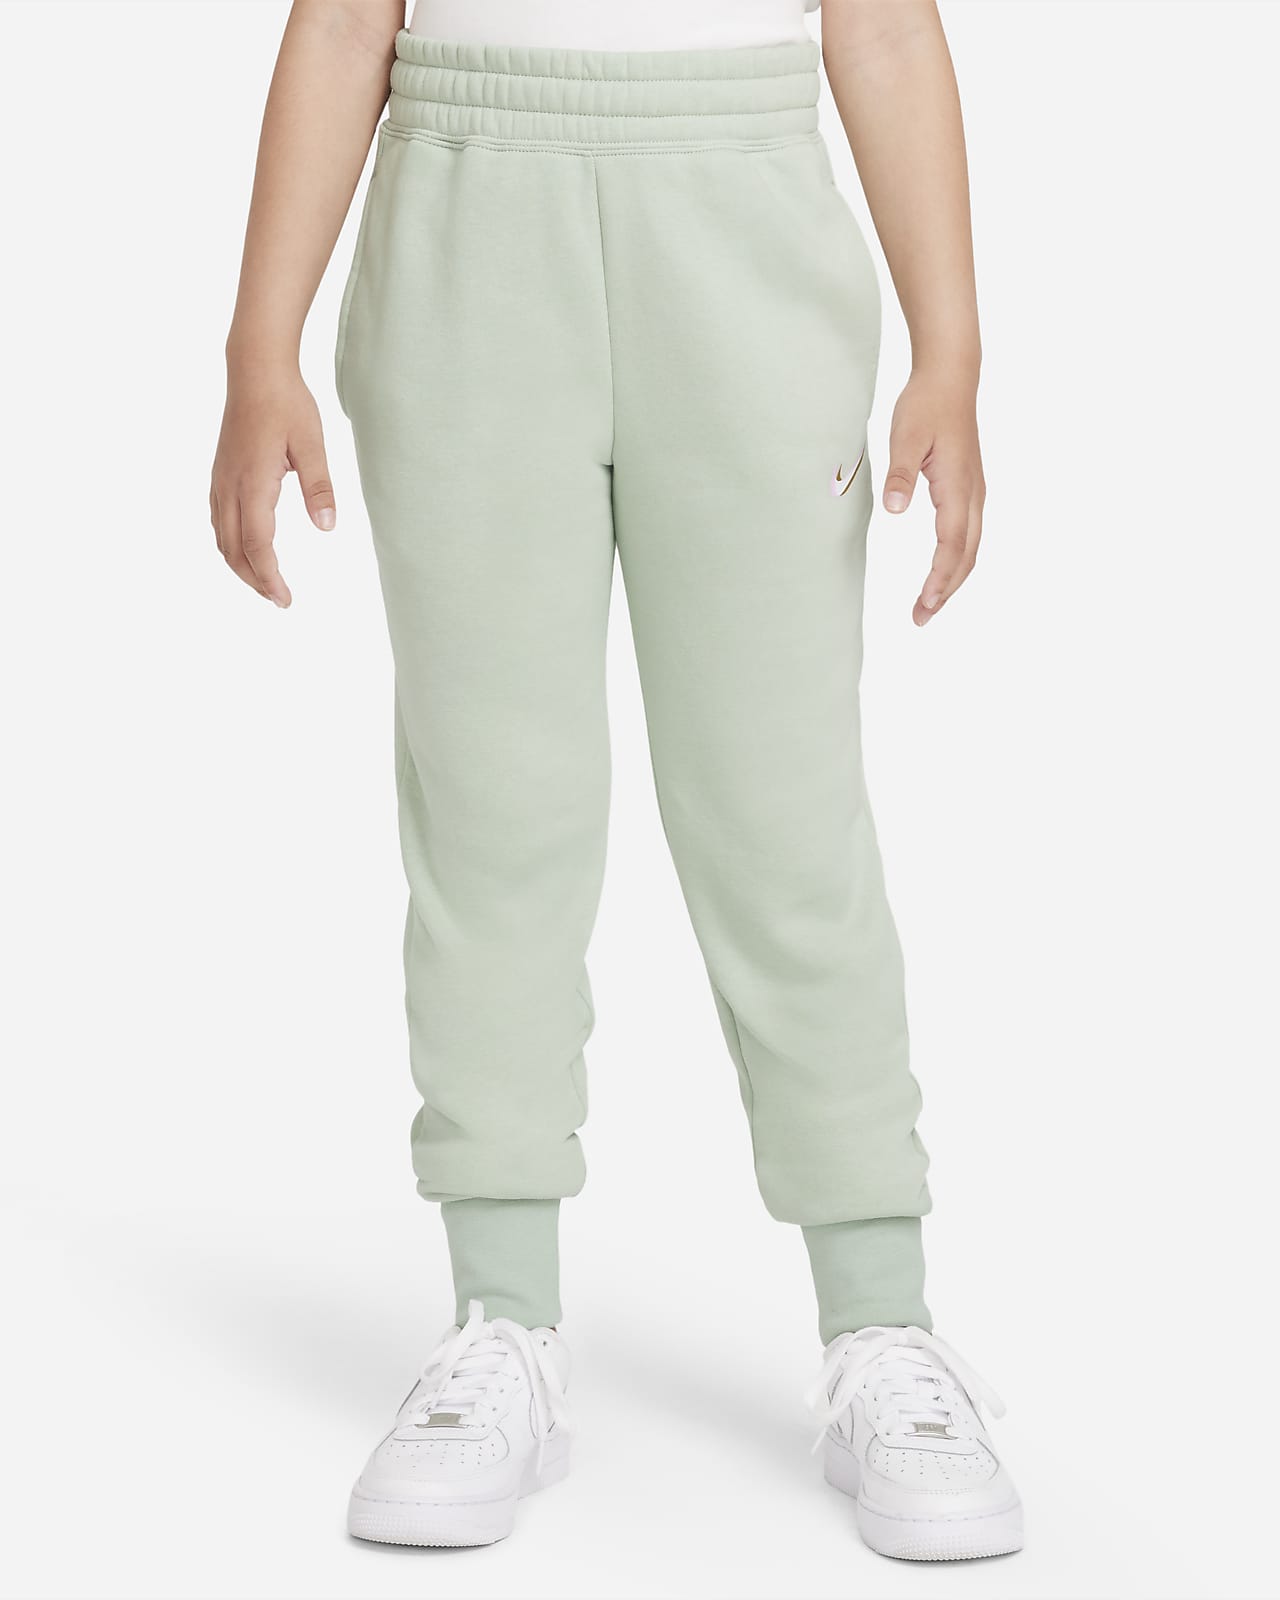 Lærd uhyre Ejeren Nike Sportswear Club-bukser med print til større børn (piger). Nike DK